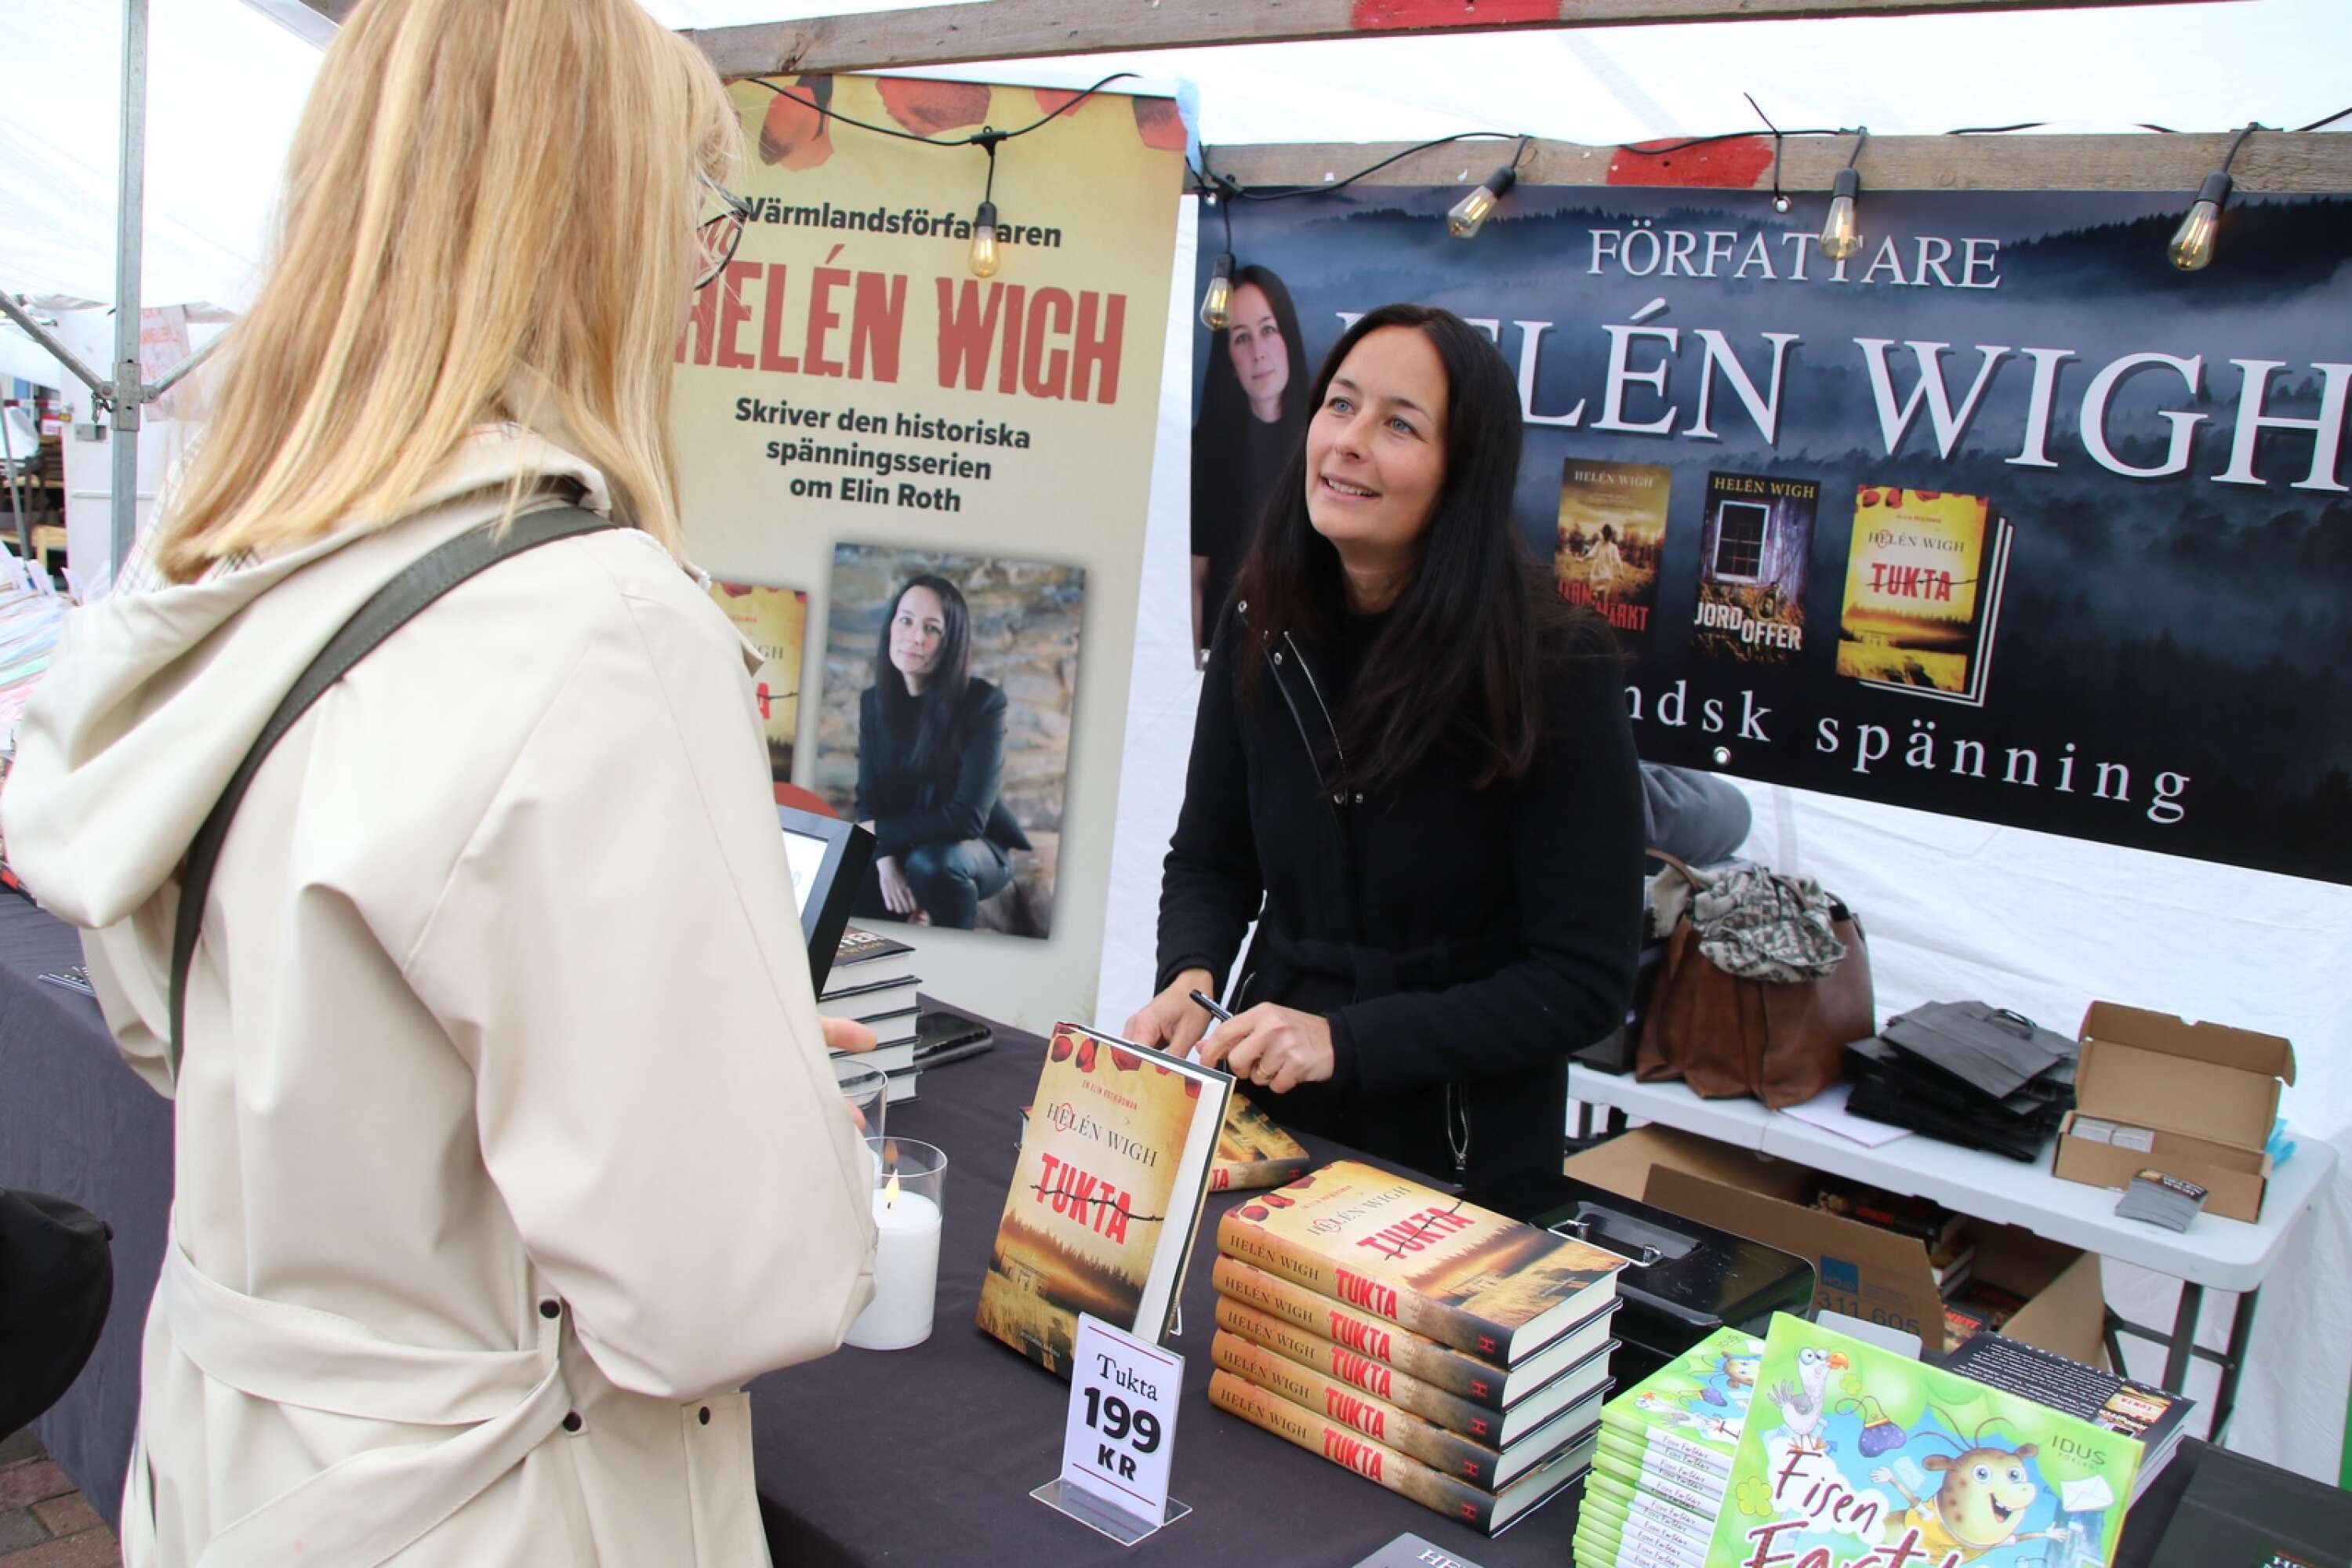 Filipstadsförfattaren Helén Wigh hade försläpp av sin nya spänningsroman Tukta. Intresset var enormt. 